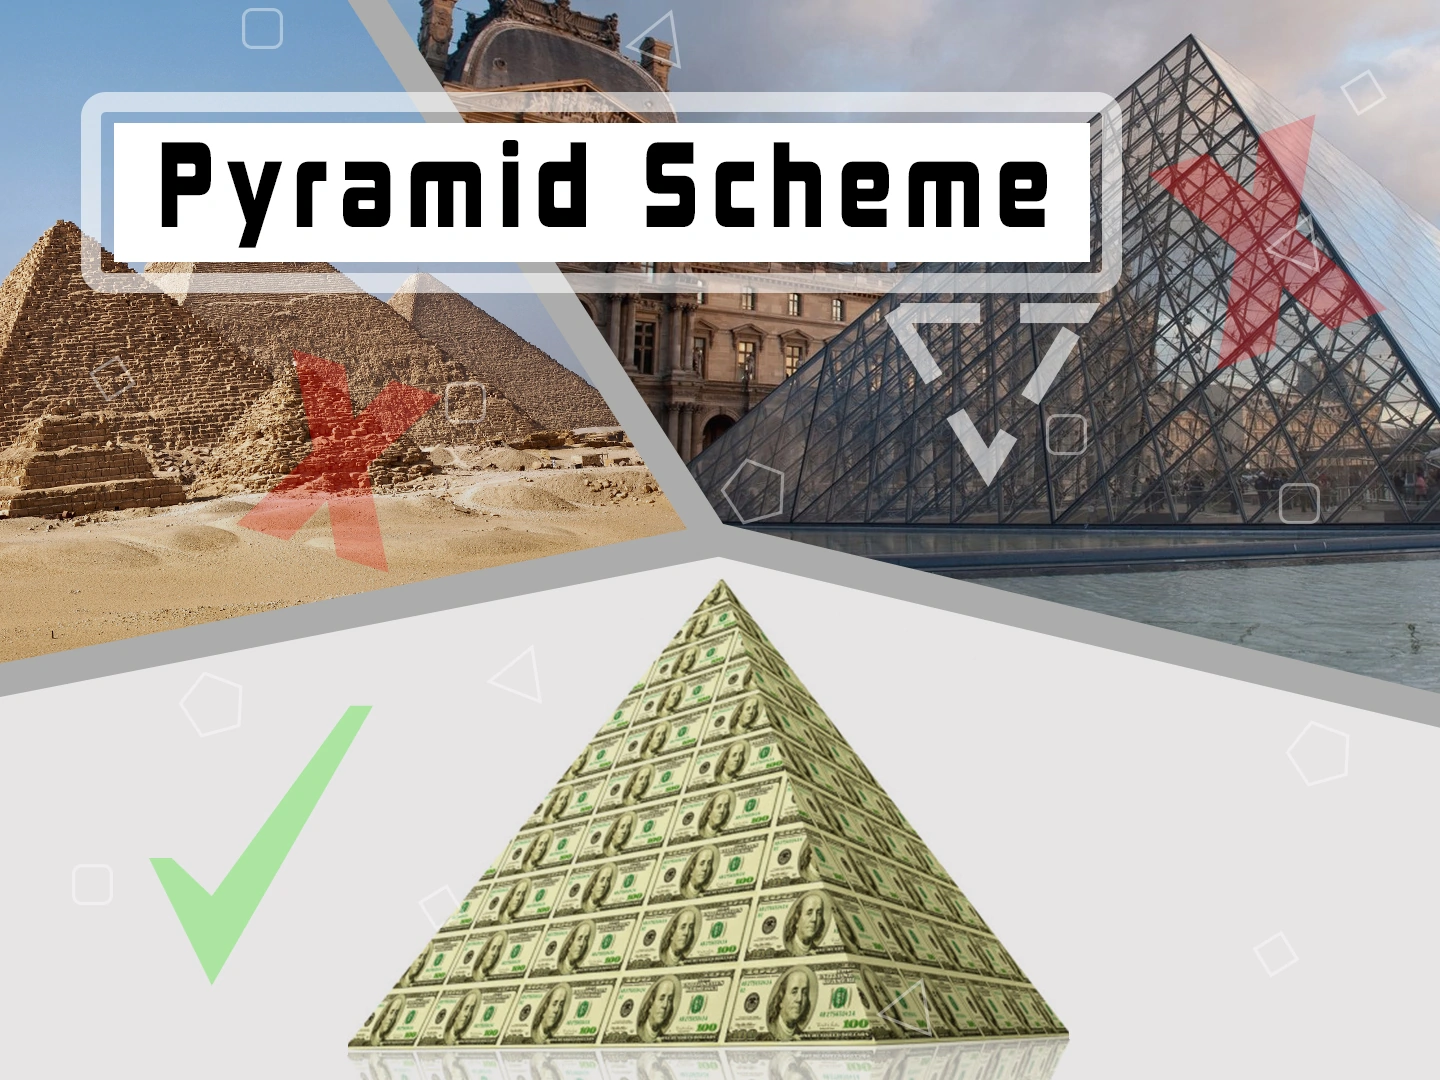 Financial pyramids